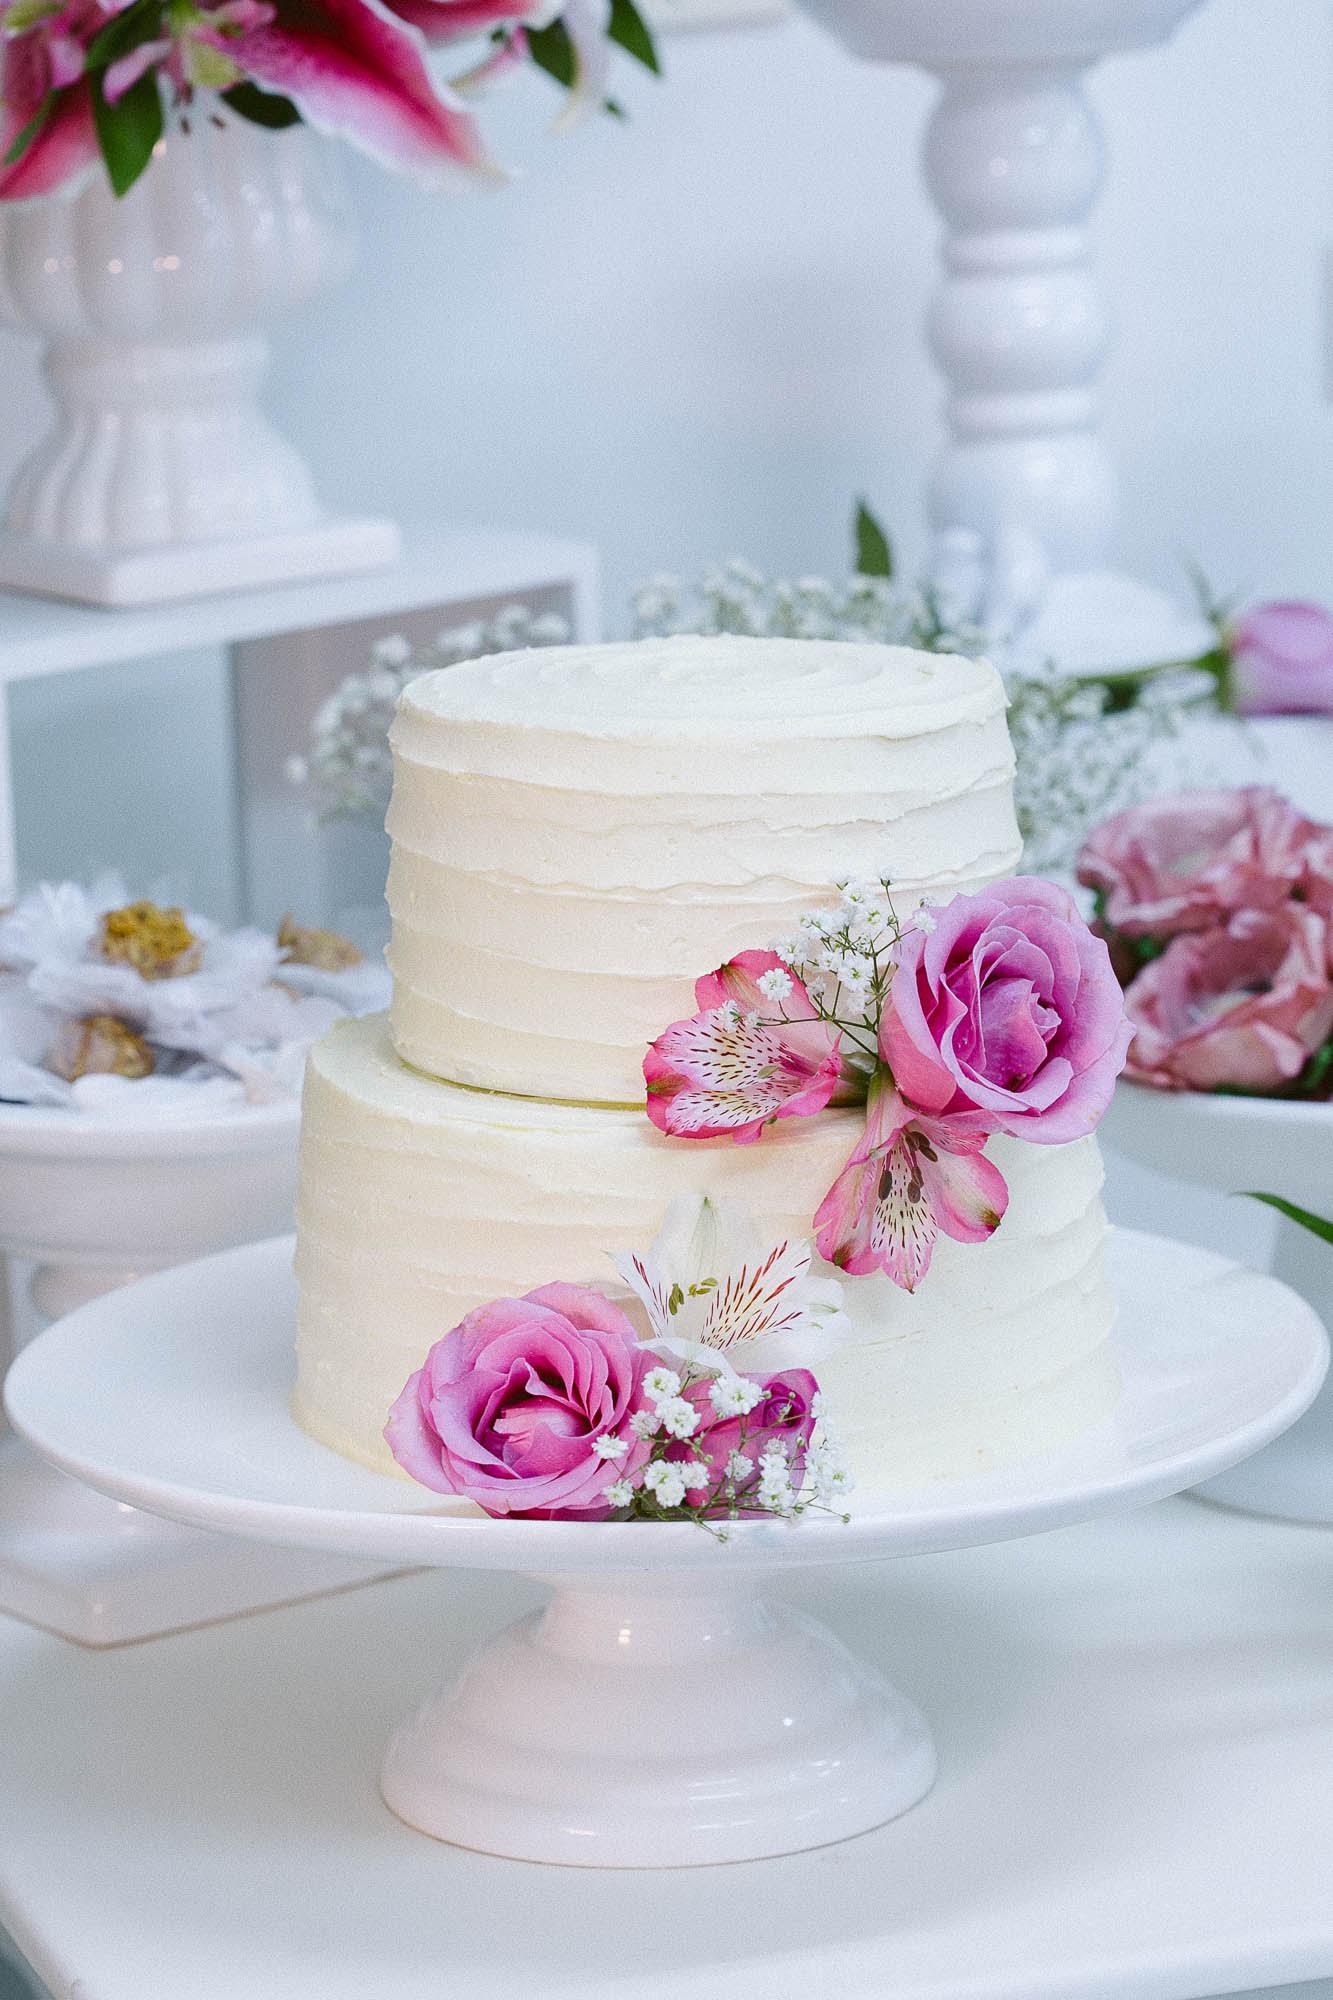 Dicas para escolher o bolo de casamento perfeito – parte II